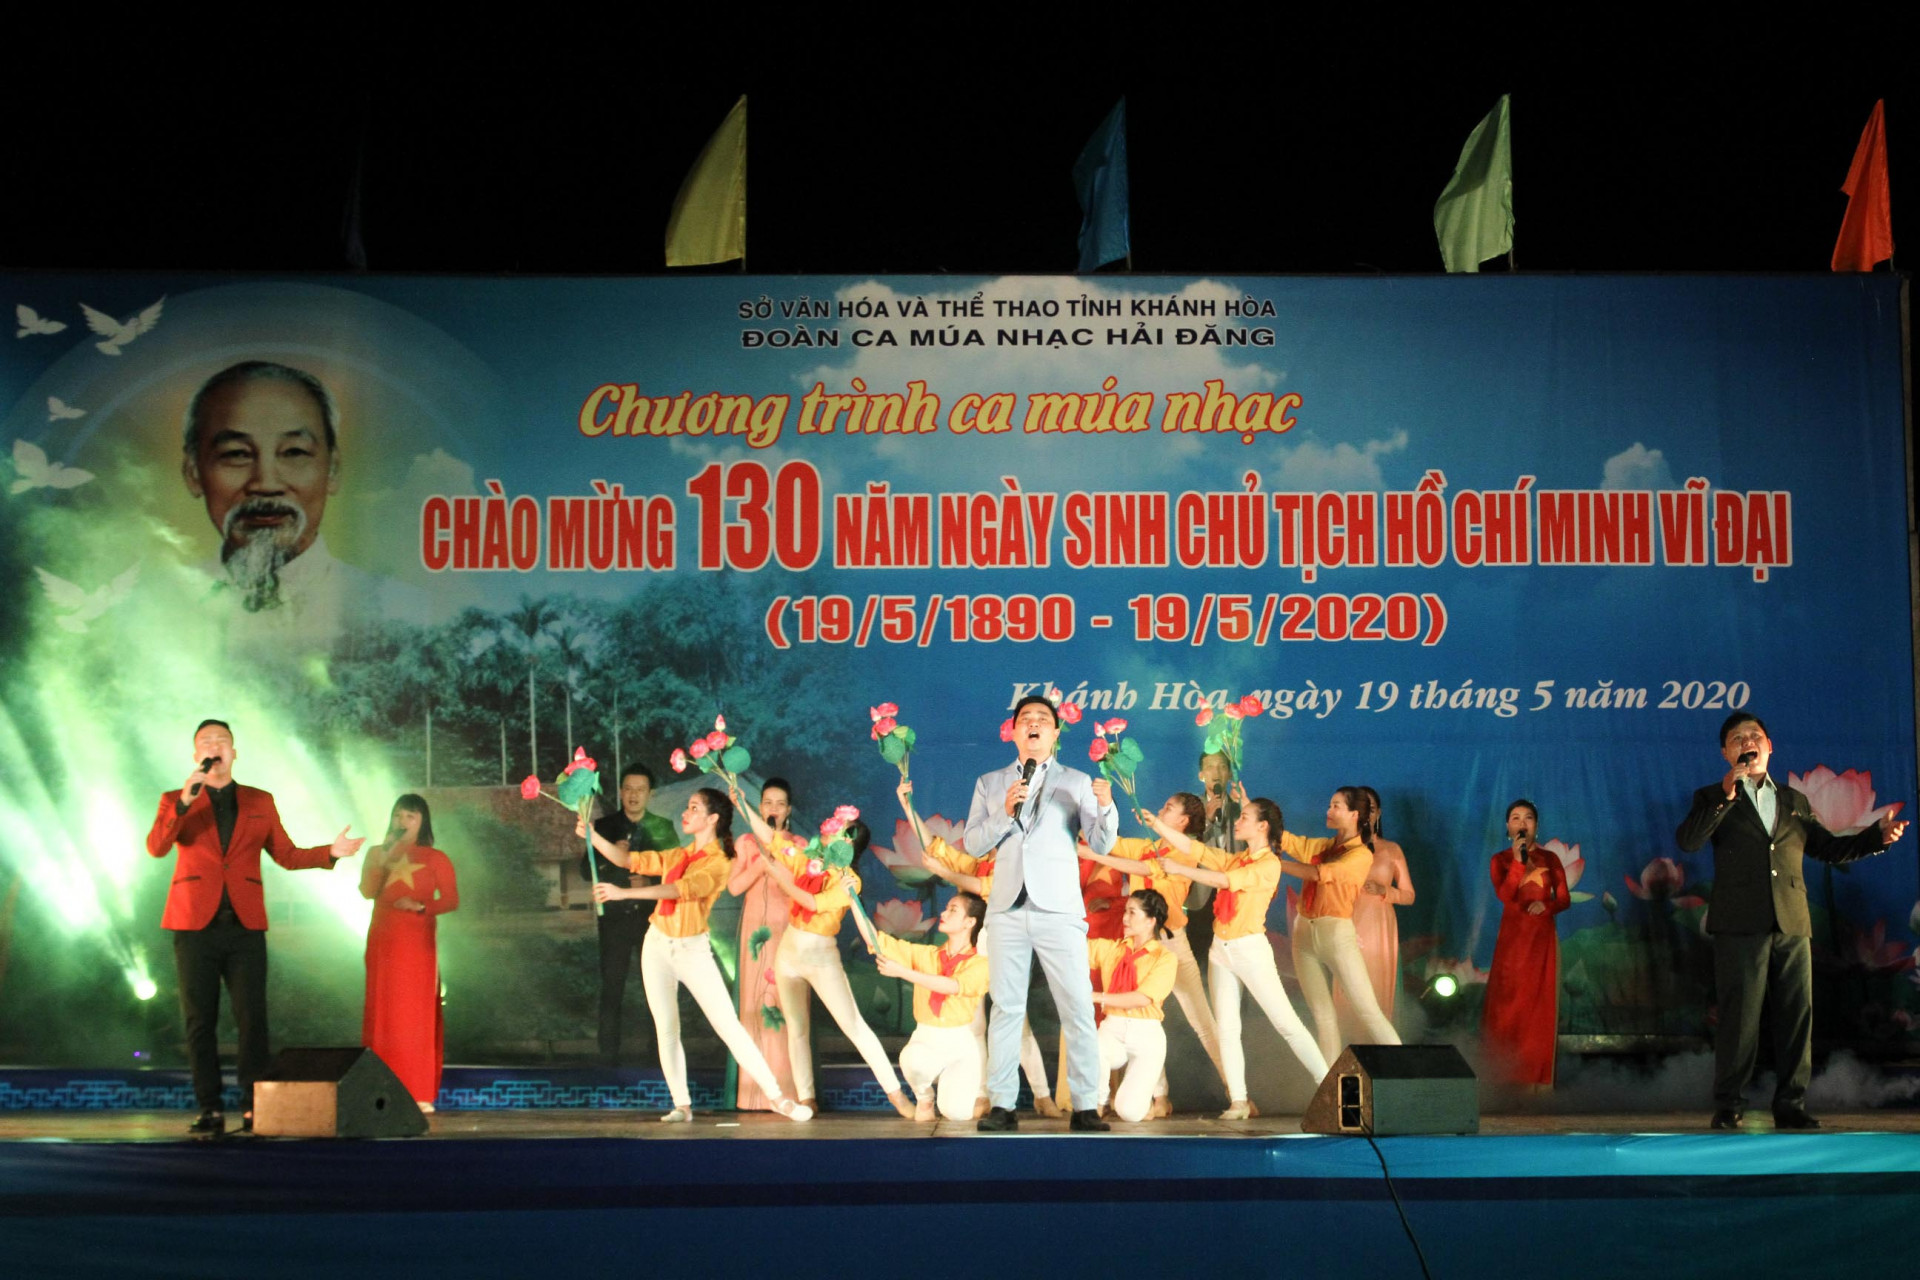 Chương trình biểu diễn nghệ thuật chào mừng 130 năm Ngày sinh Chủ tịch Hồ Chí Minh do Đoàn ca múa nhạc Hải Đăng thực hiện. 